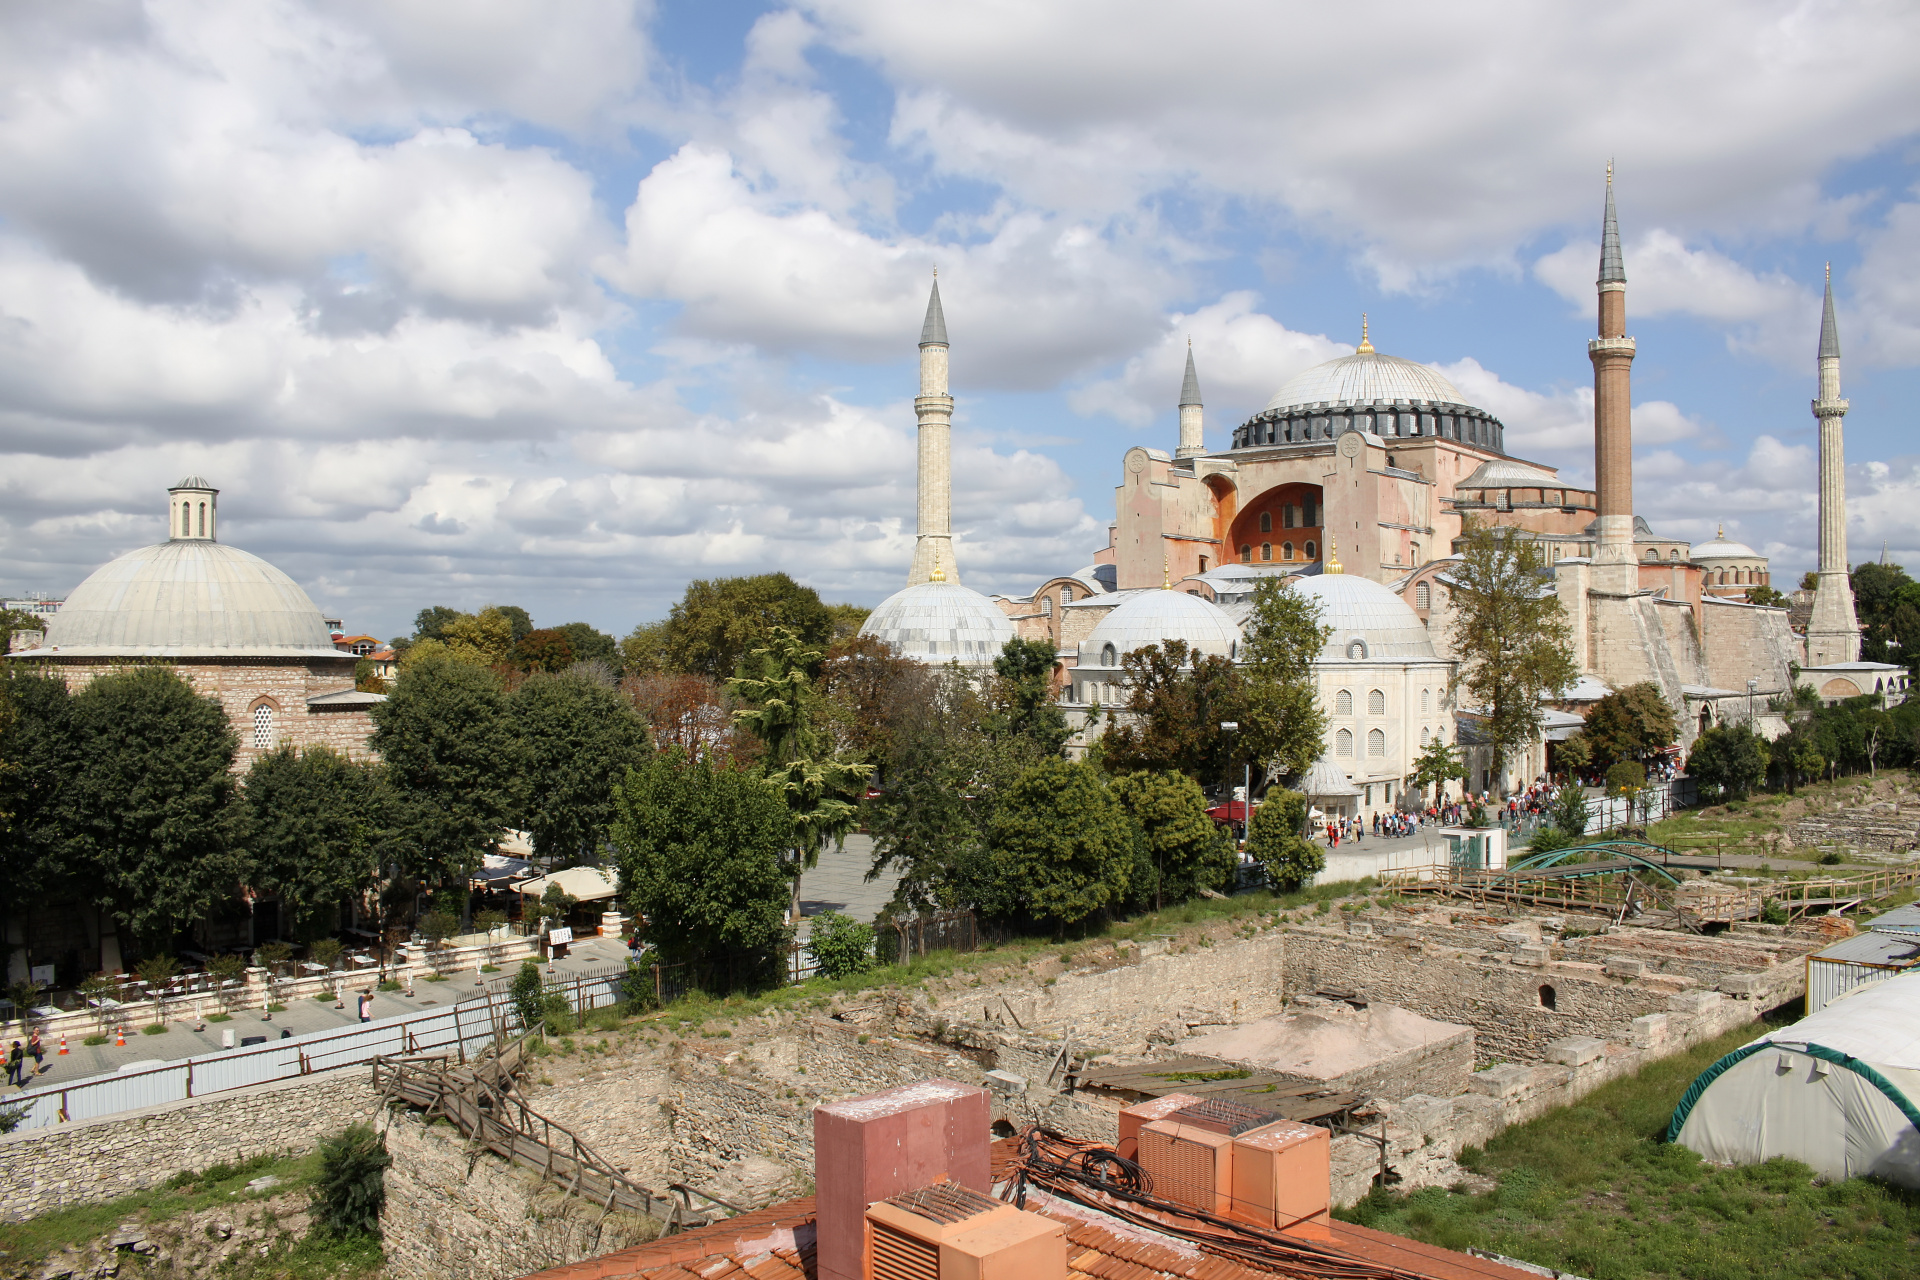 Ayasofya (Hagia Sophia) (Podróże » Stambuł » Meczety)